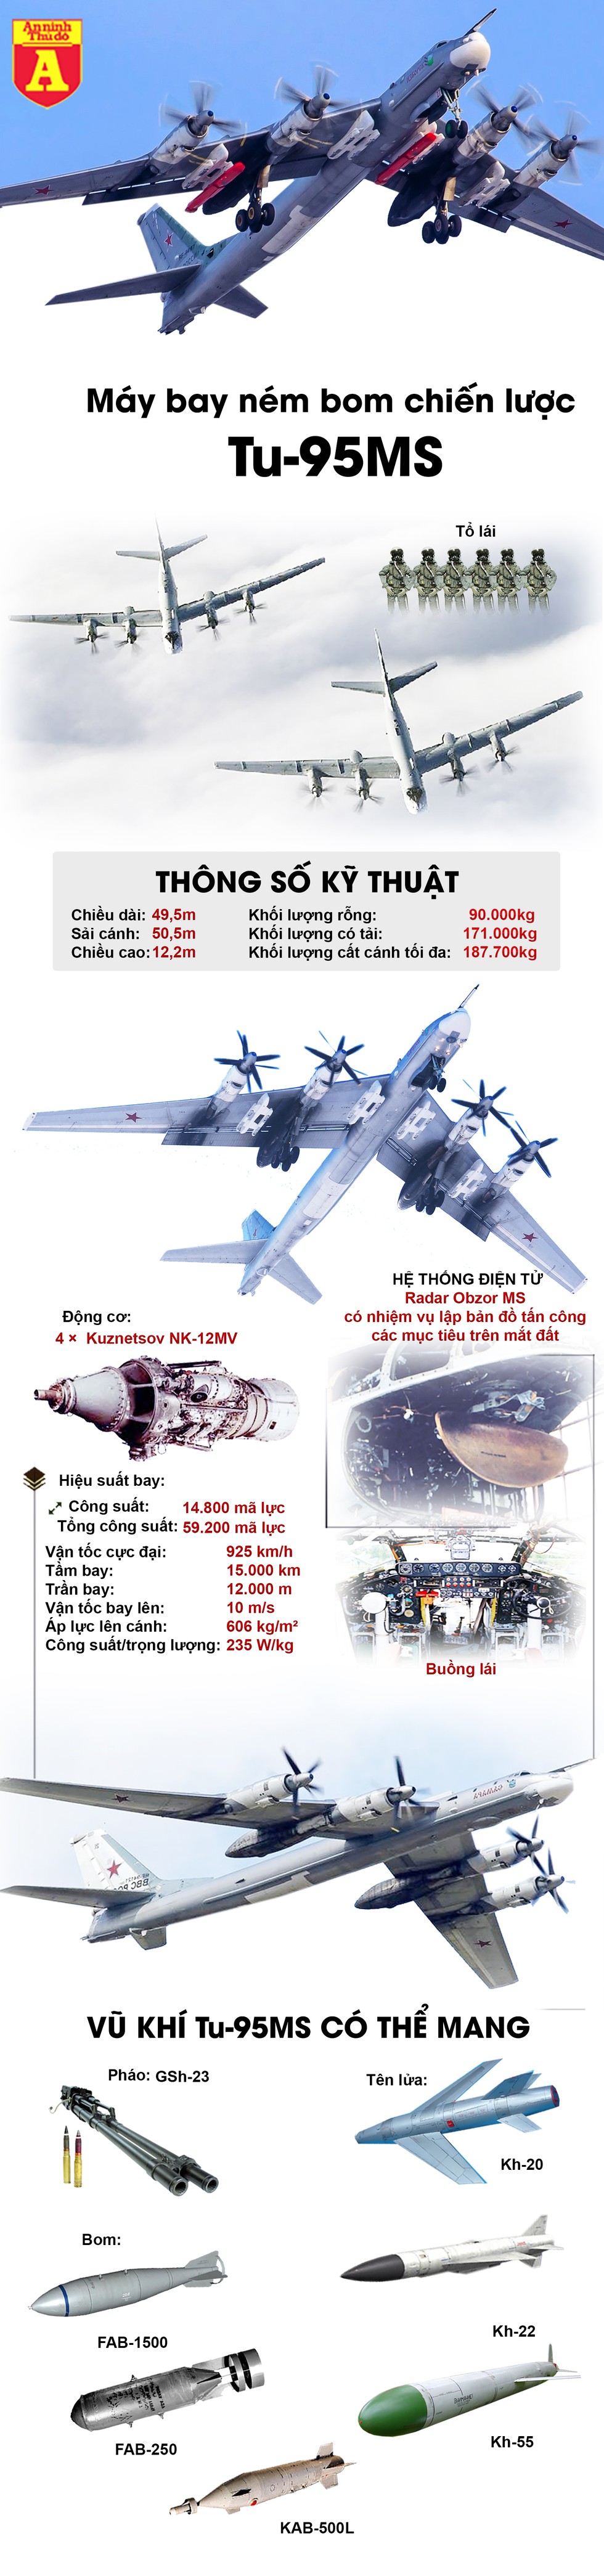 [Infographics] "Gấu bay" Tu-95MS lọt top máy bay cực nguy hiểm của Nga - Ảnh 1